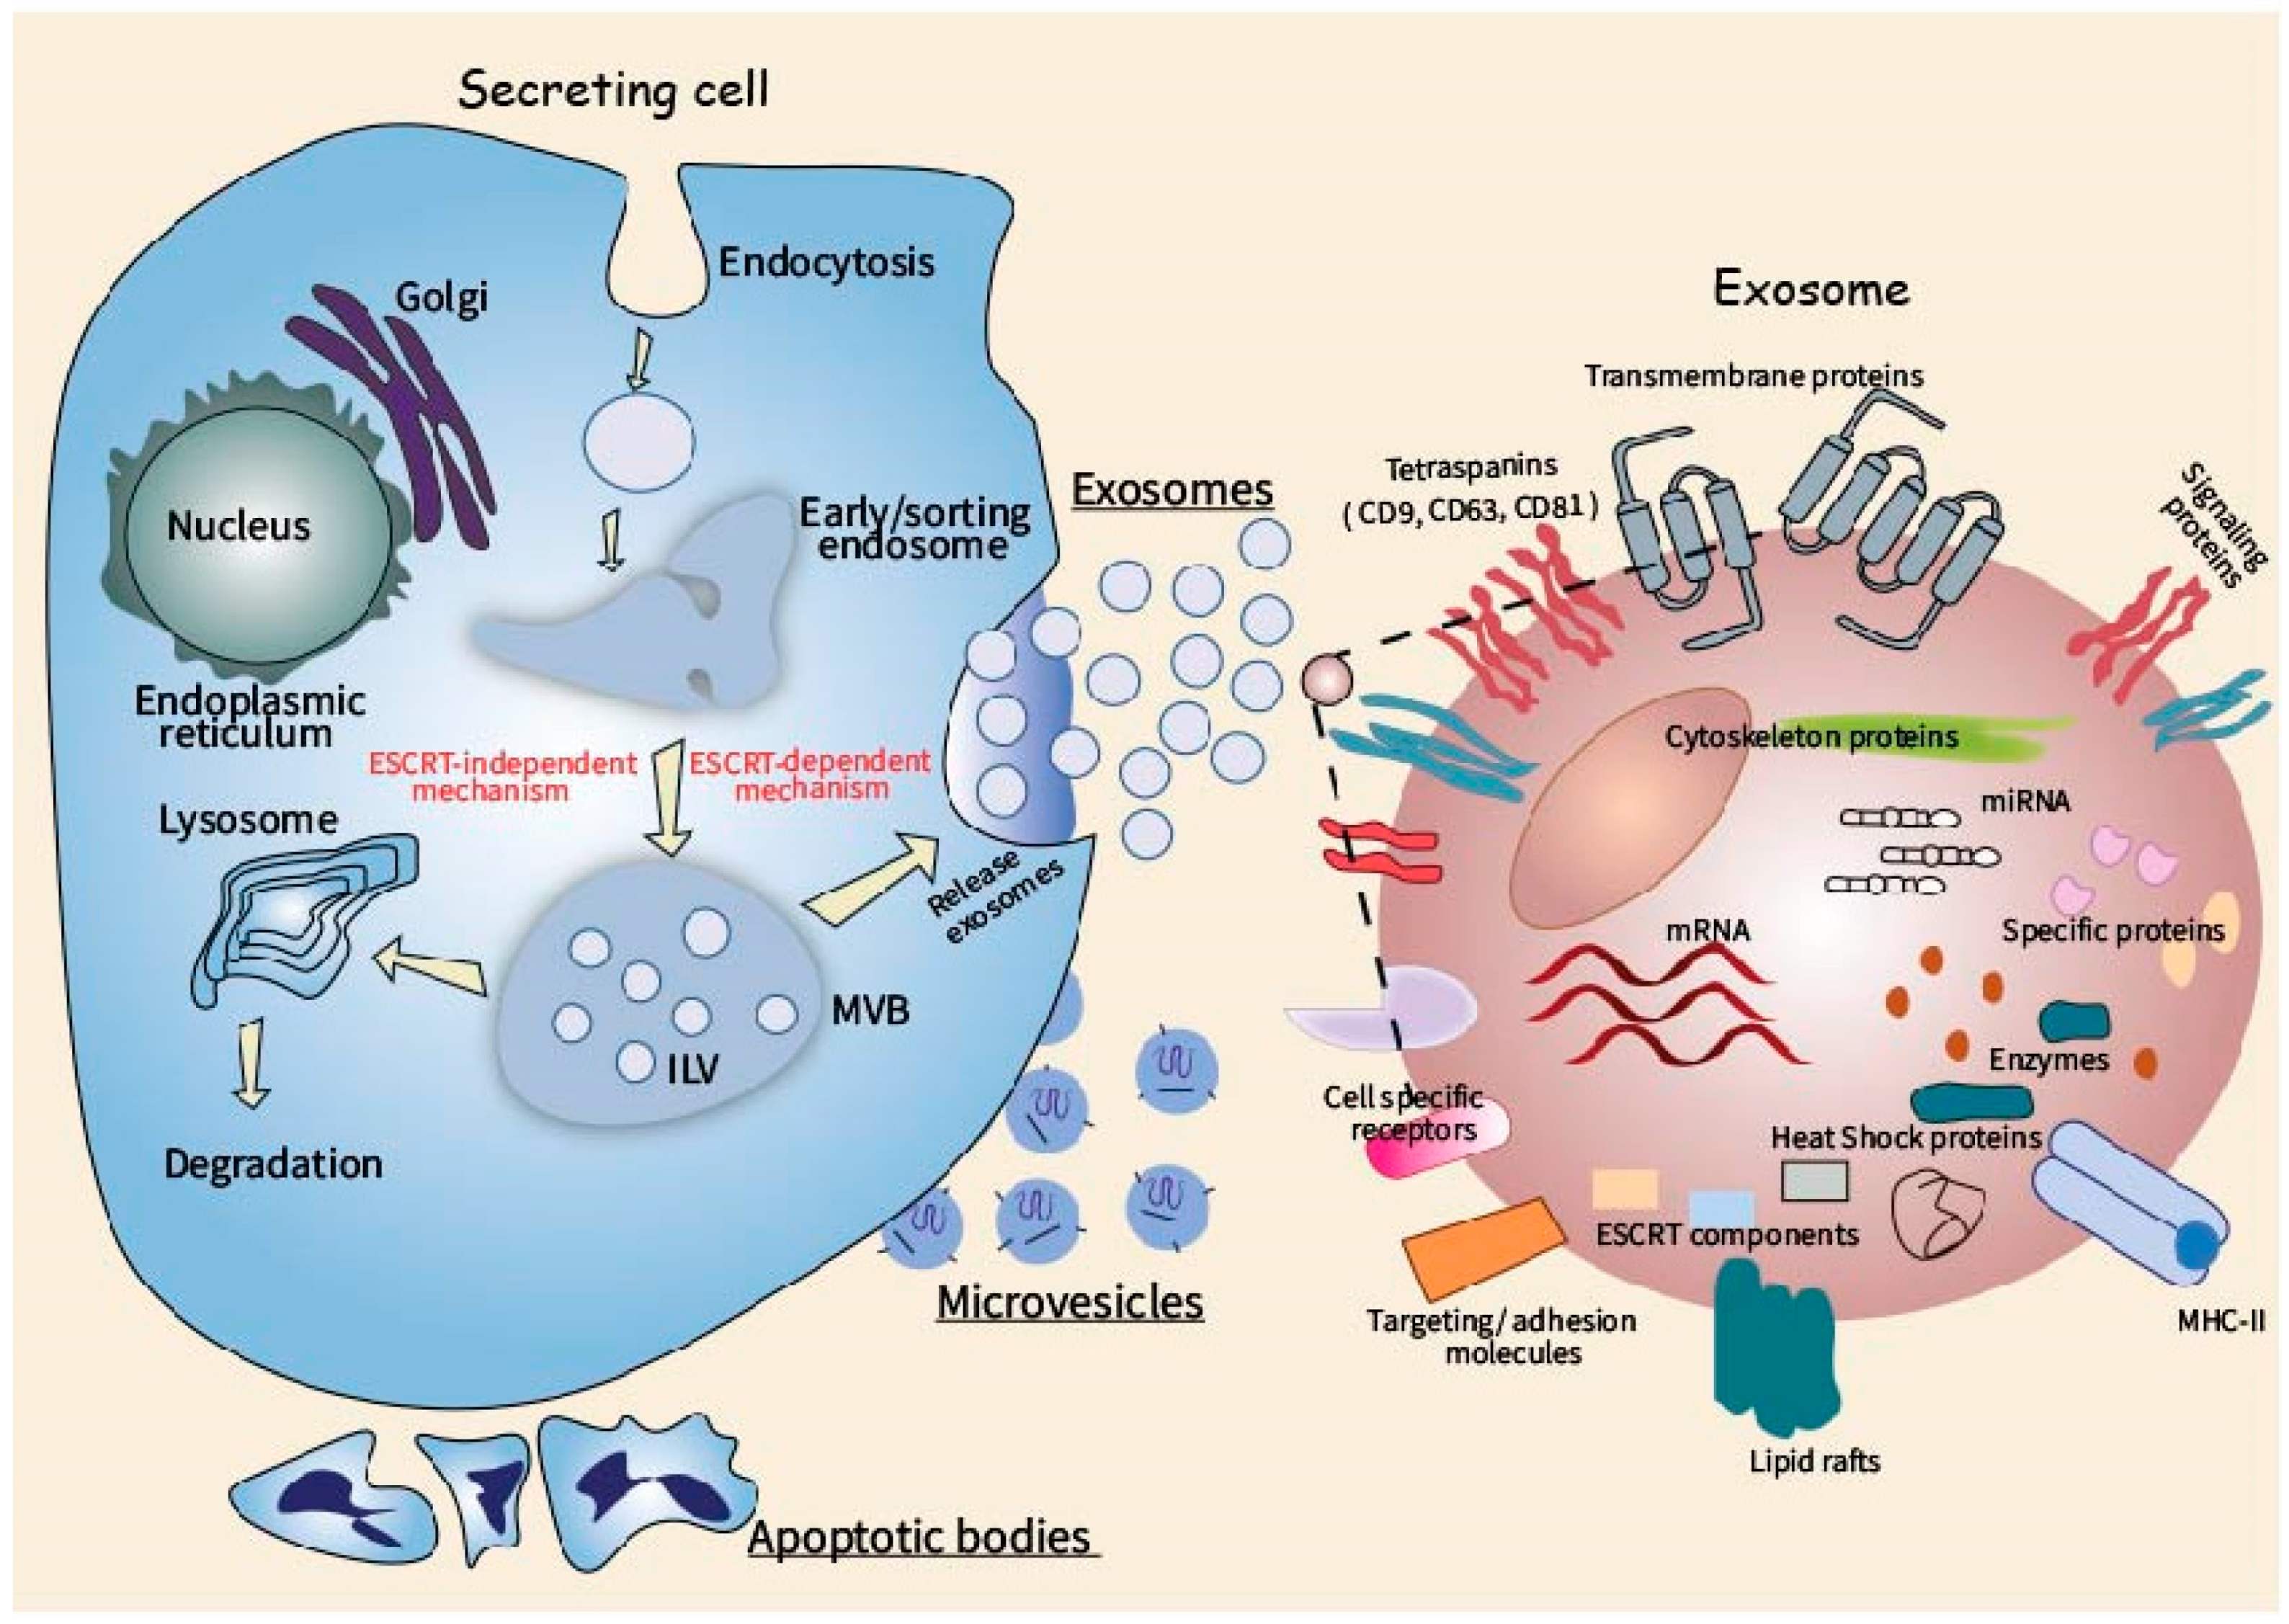 Физическое состояние клетки. Функциональные состояния клетки. Extracellular vesicles. Биогенез картинки. Exosome.